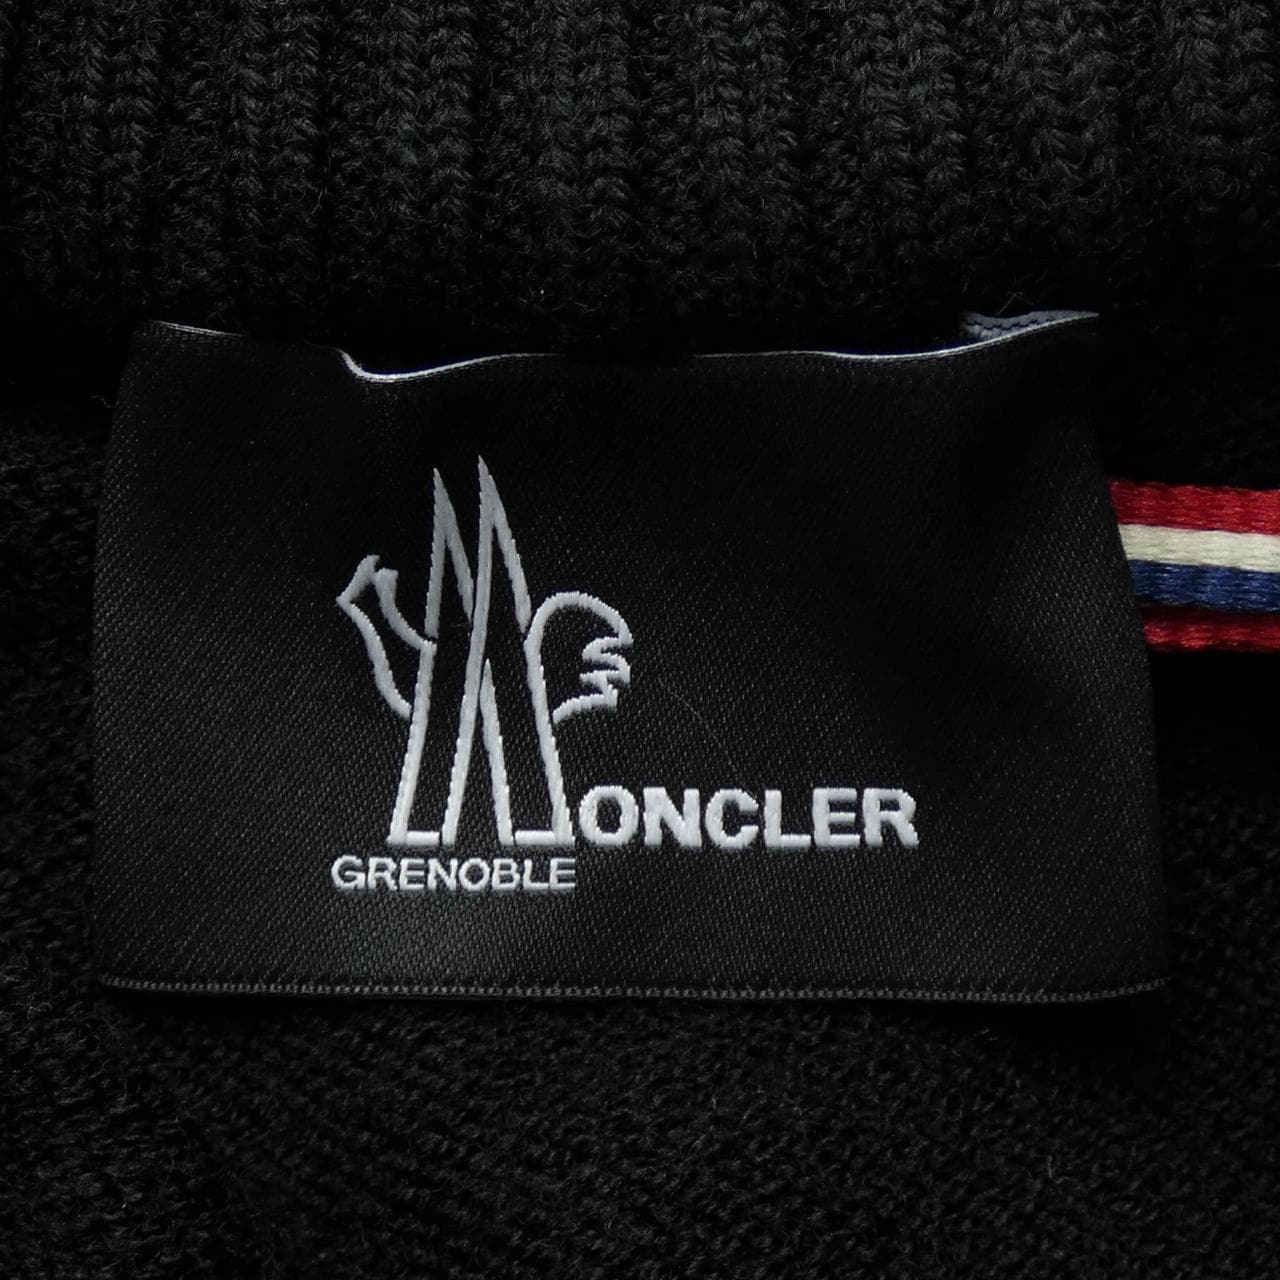 【BRAND NEW】MONCLER GRENOBLE MONCLER GRENOBLE Down Jacket